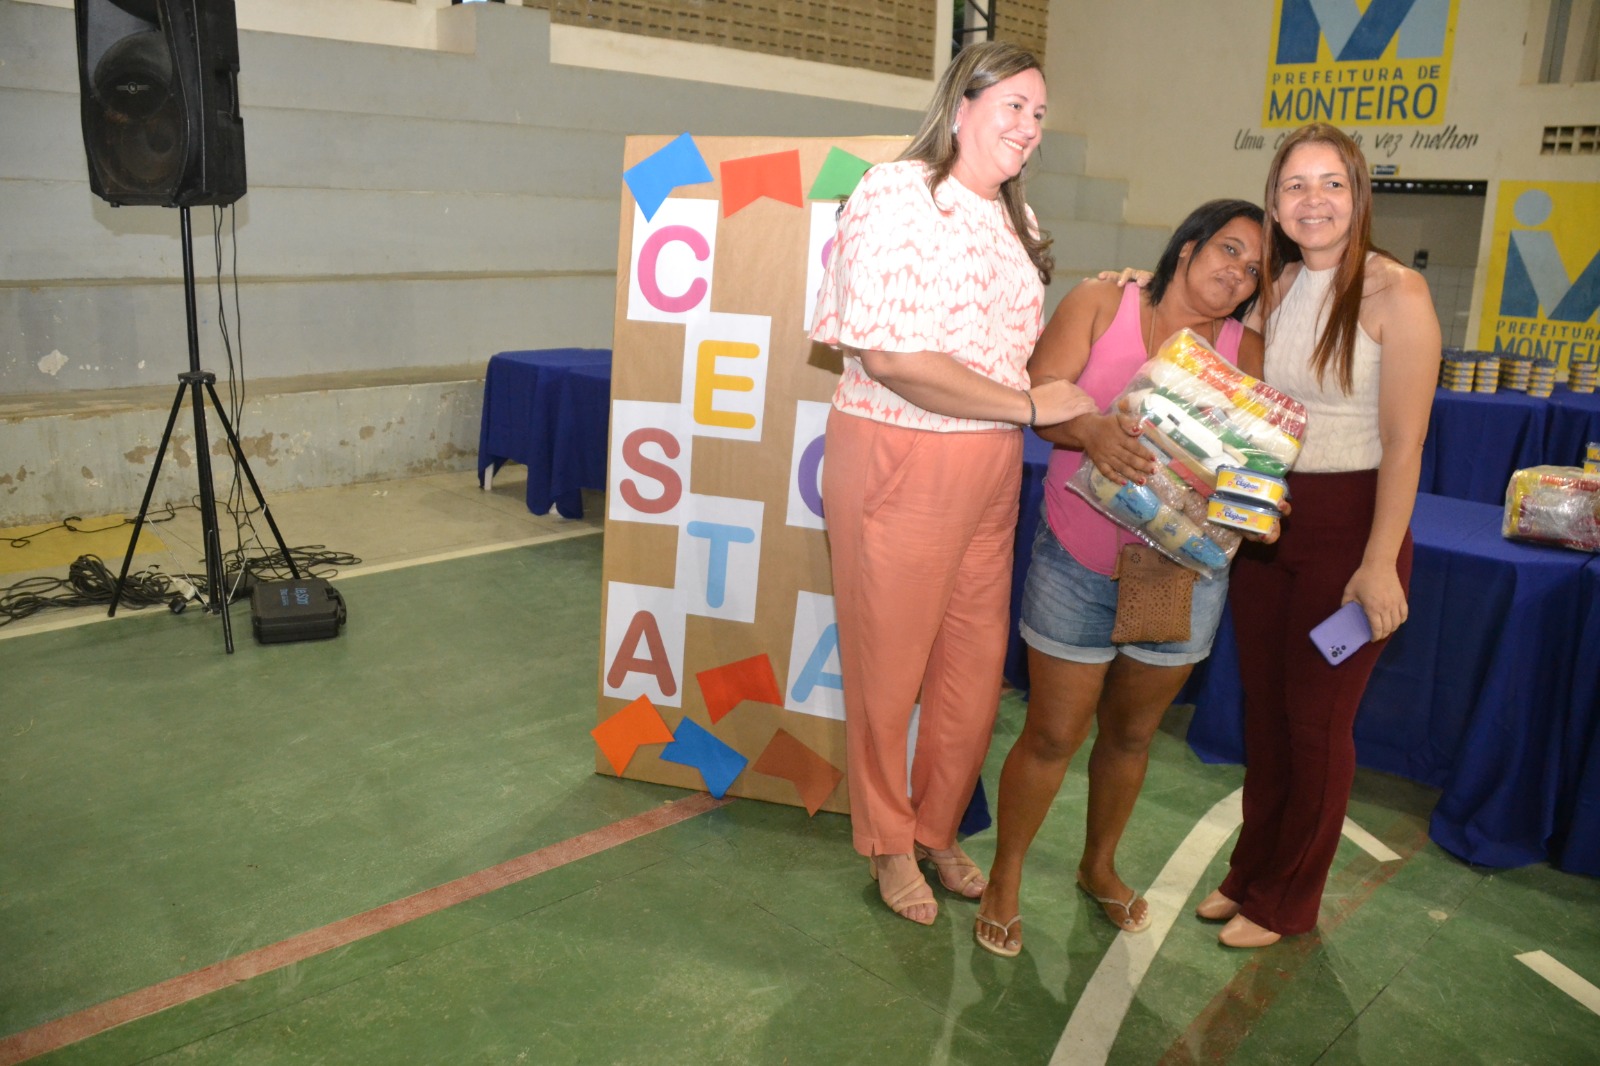 Prefeitura de Monteiro entrega feiras do Programa Cesta Social, beneficiando 500 famílias